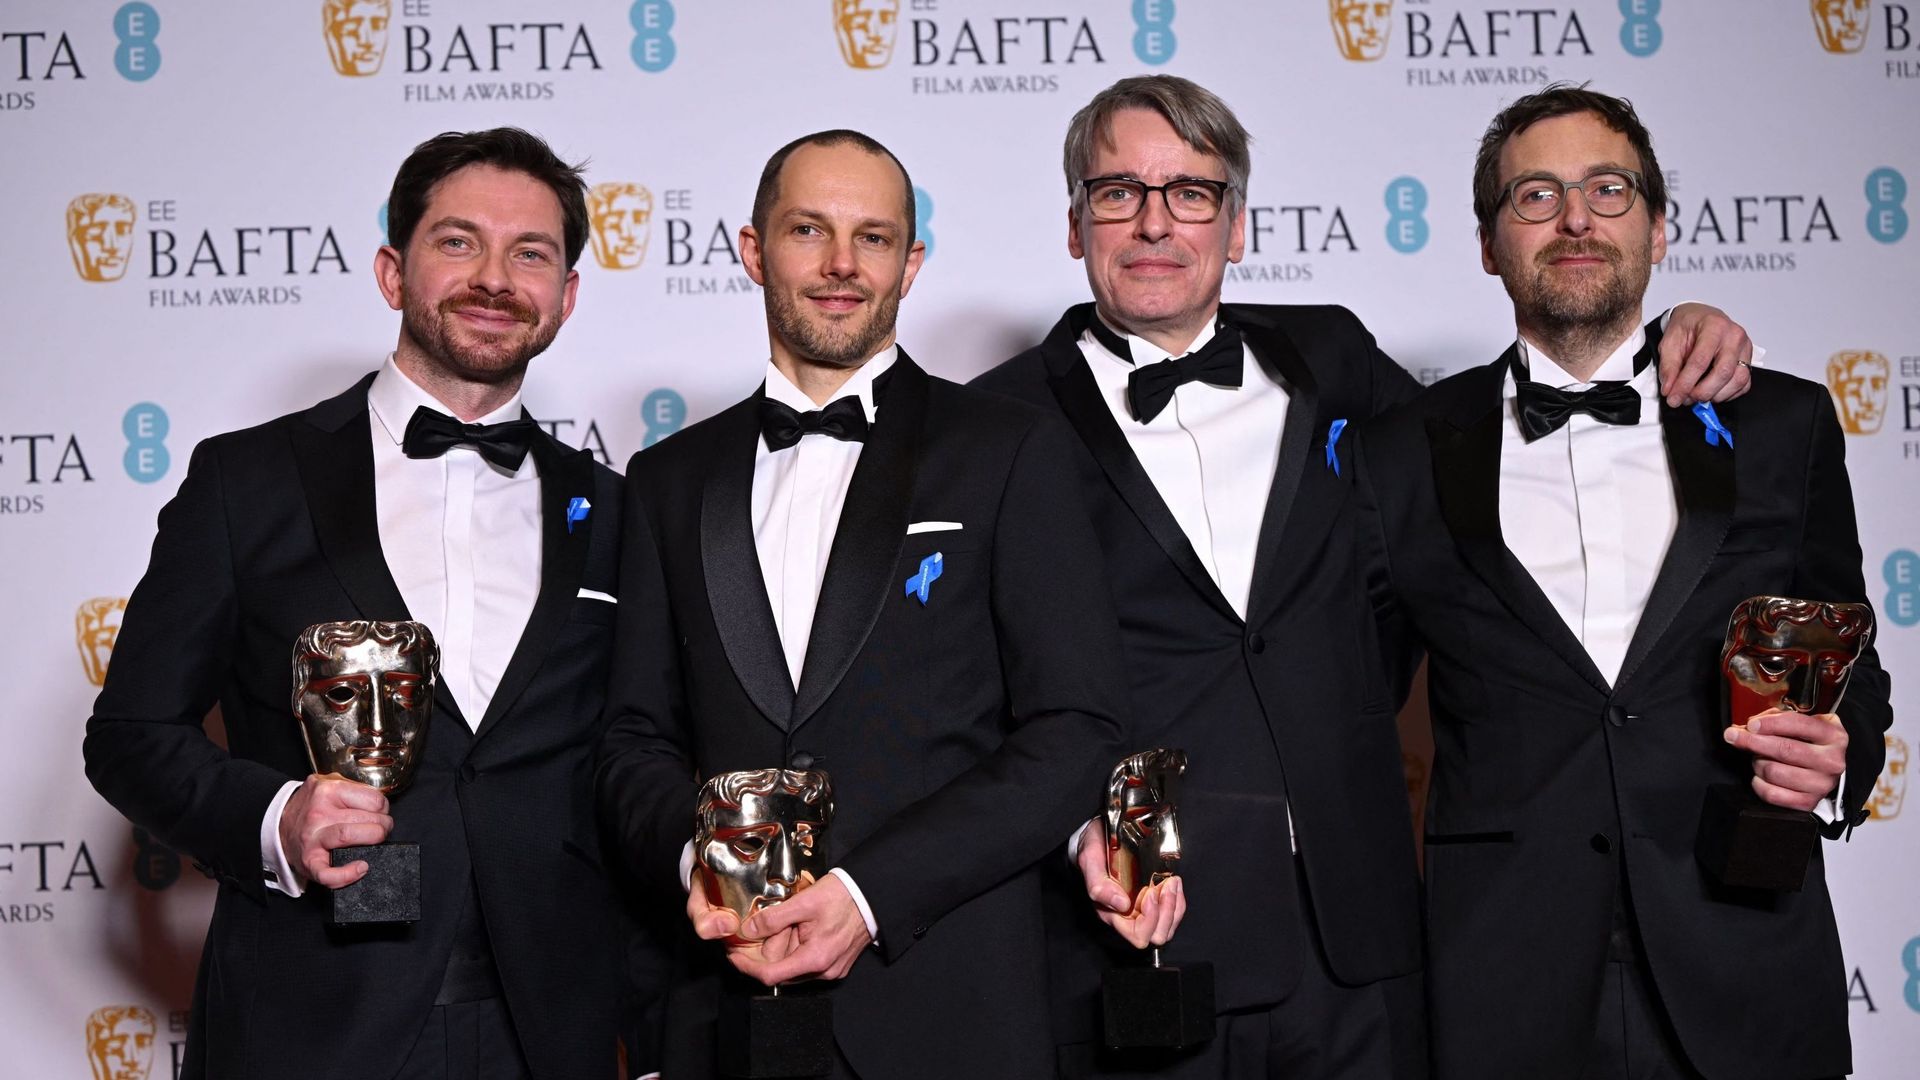 Viktor Prasil, Markus Stemler, Frank Kruse et Lars Ginzel posent avec leurs prix pour "À l'Ouest rien de nouveau" lors de la cérémonie des BAFTA British Academy Film Awards.